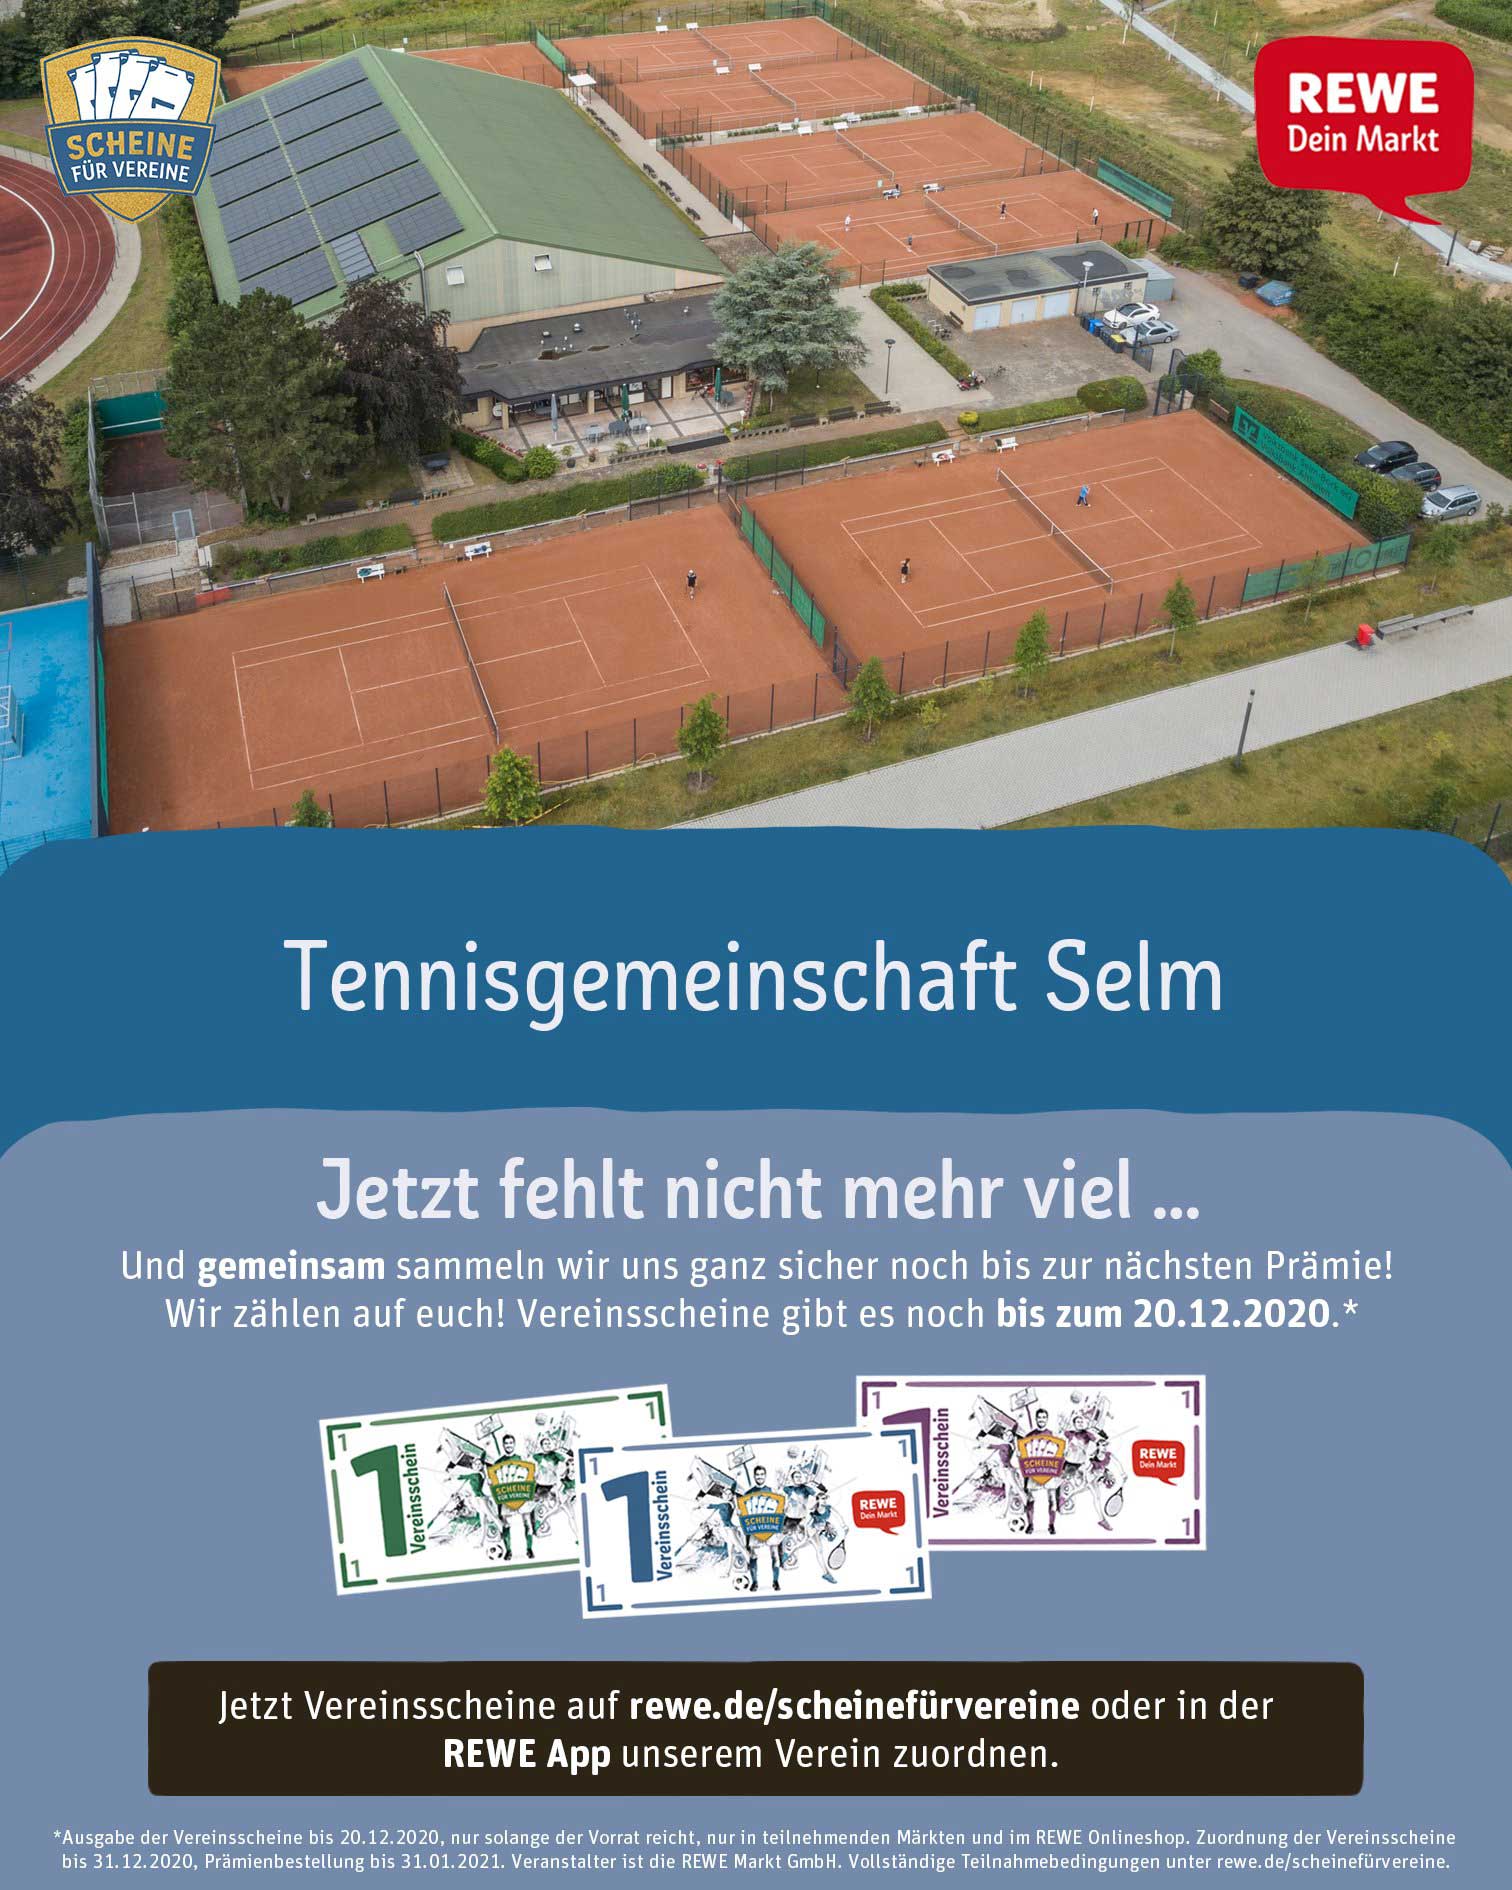 Rewe Scheine fuer Vereine Poster 2020